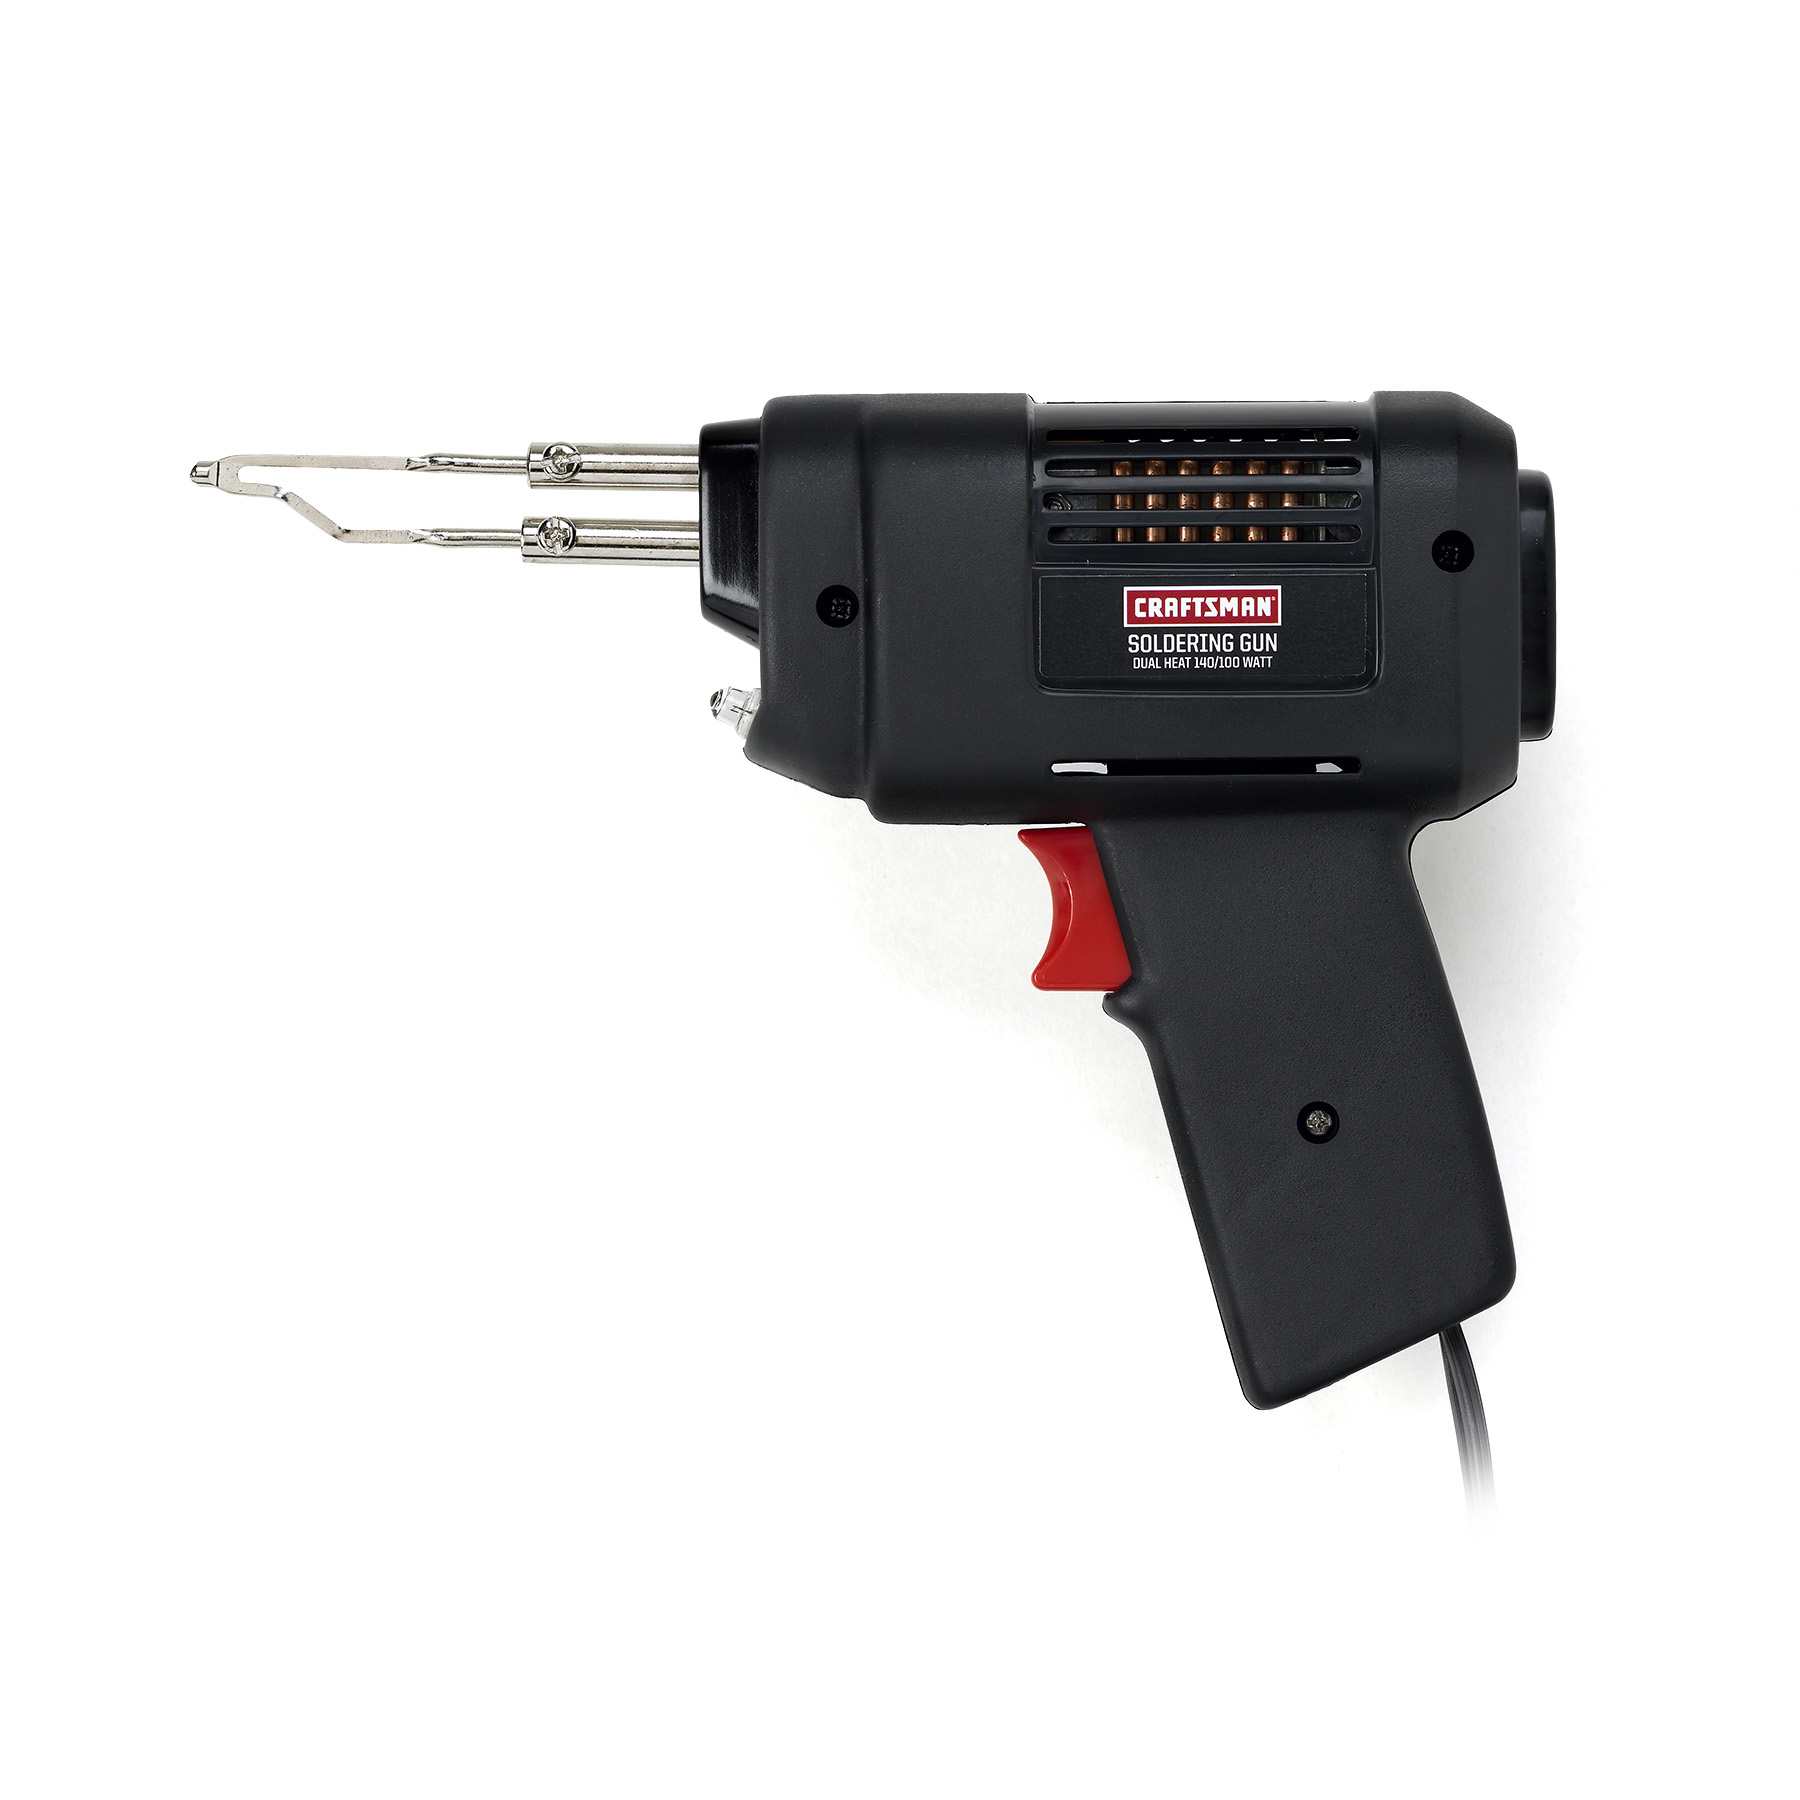 Craftsman Medium Duty Soldering Gun - 100/140 watt